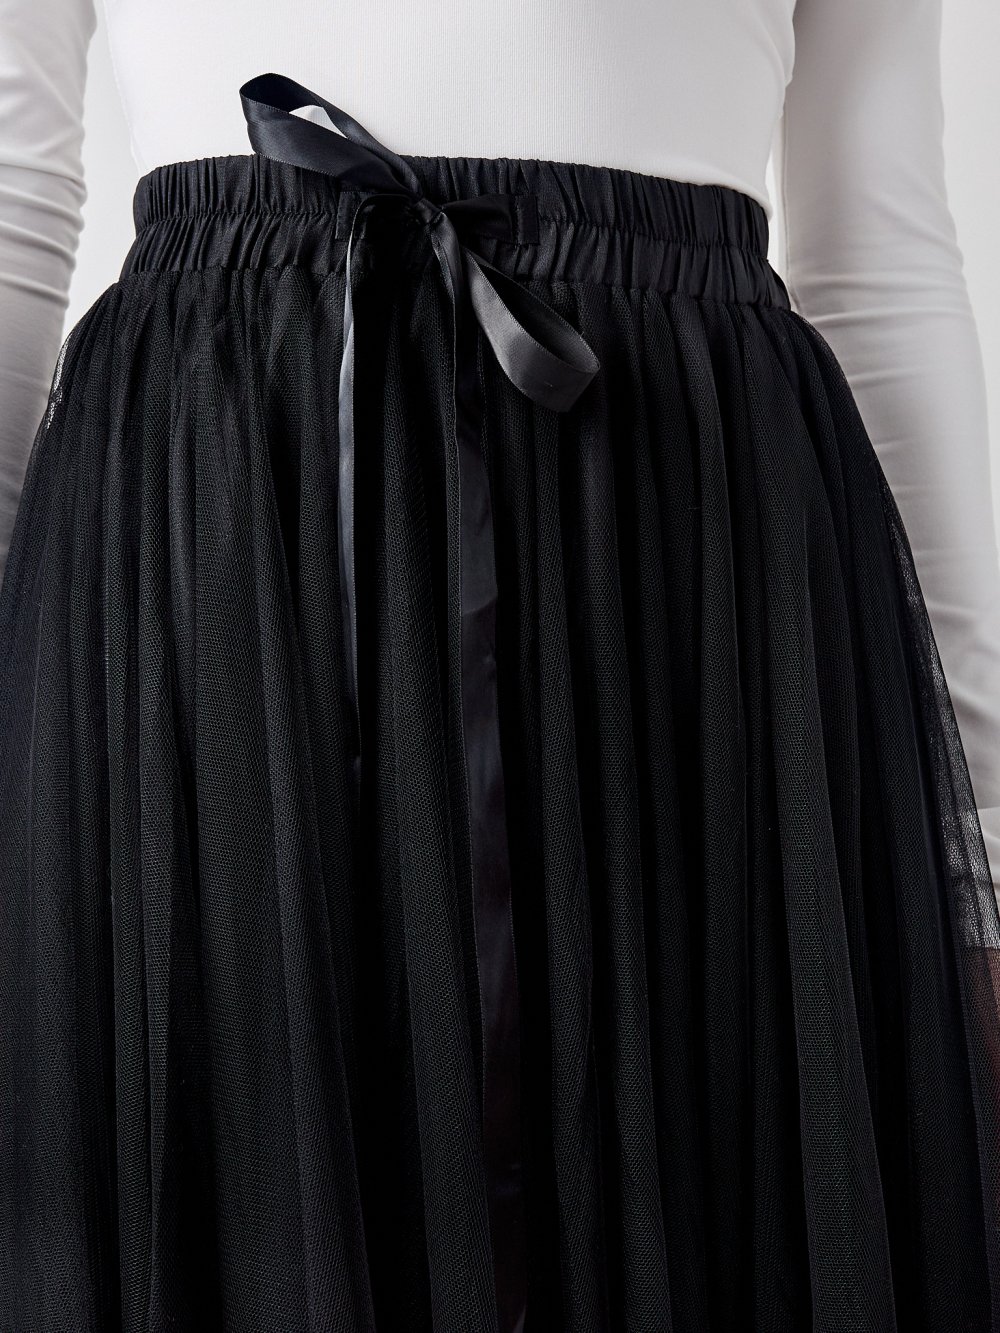 Černá tylová sukně Lia